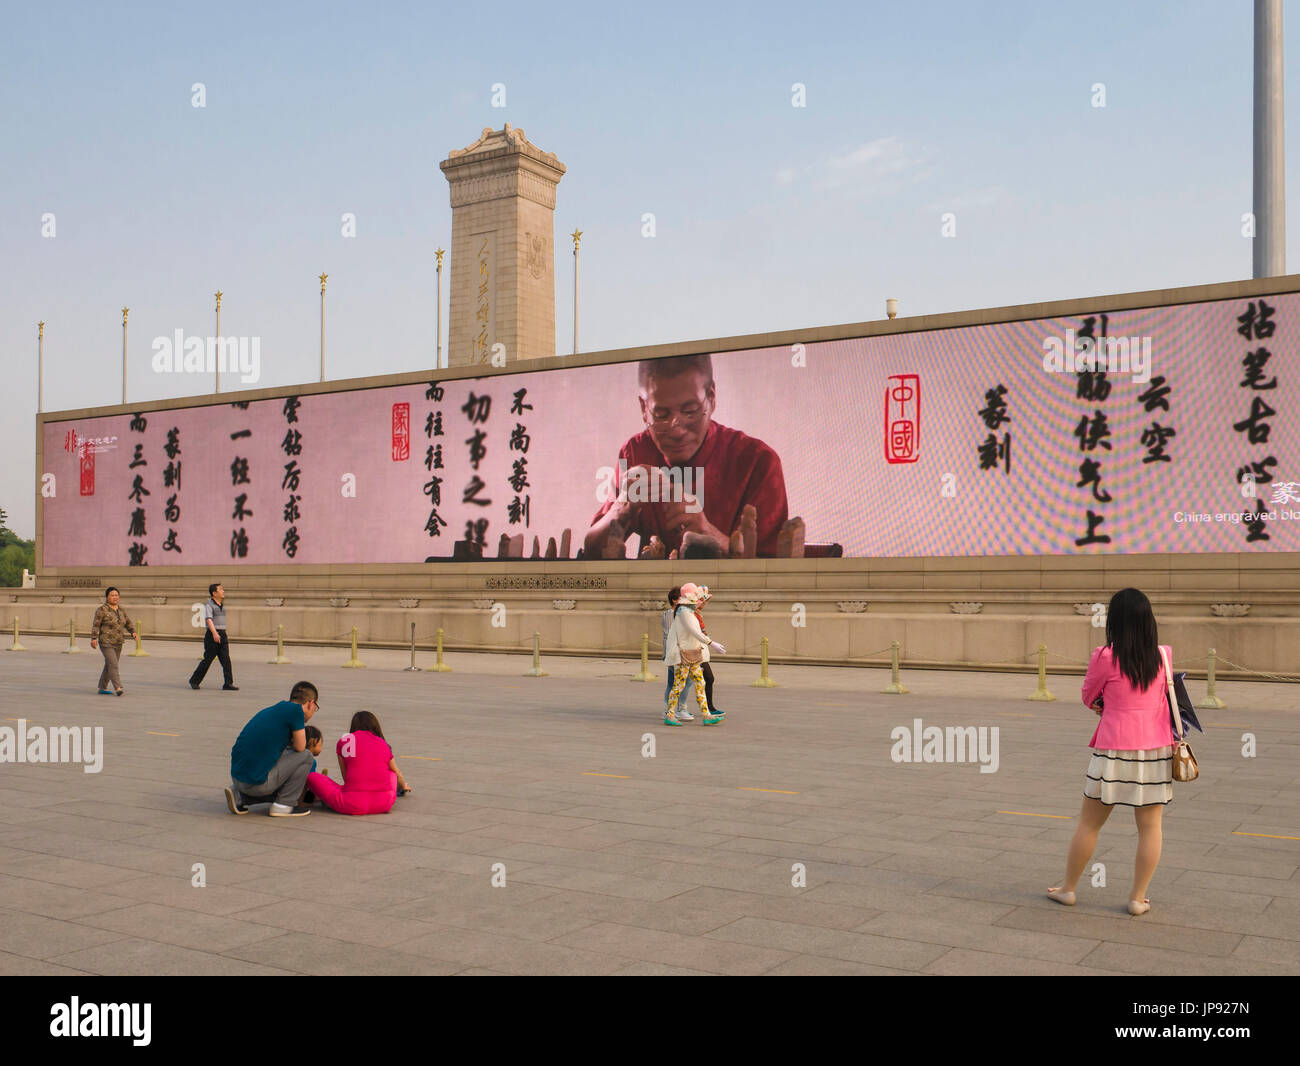 Giant Video Screen, Tian'anmen Square, Beijing, China Stock Photo